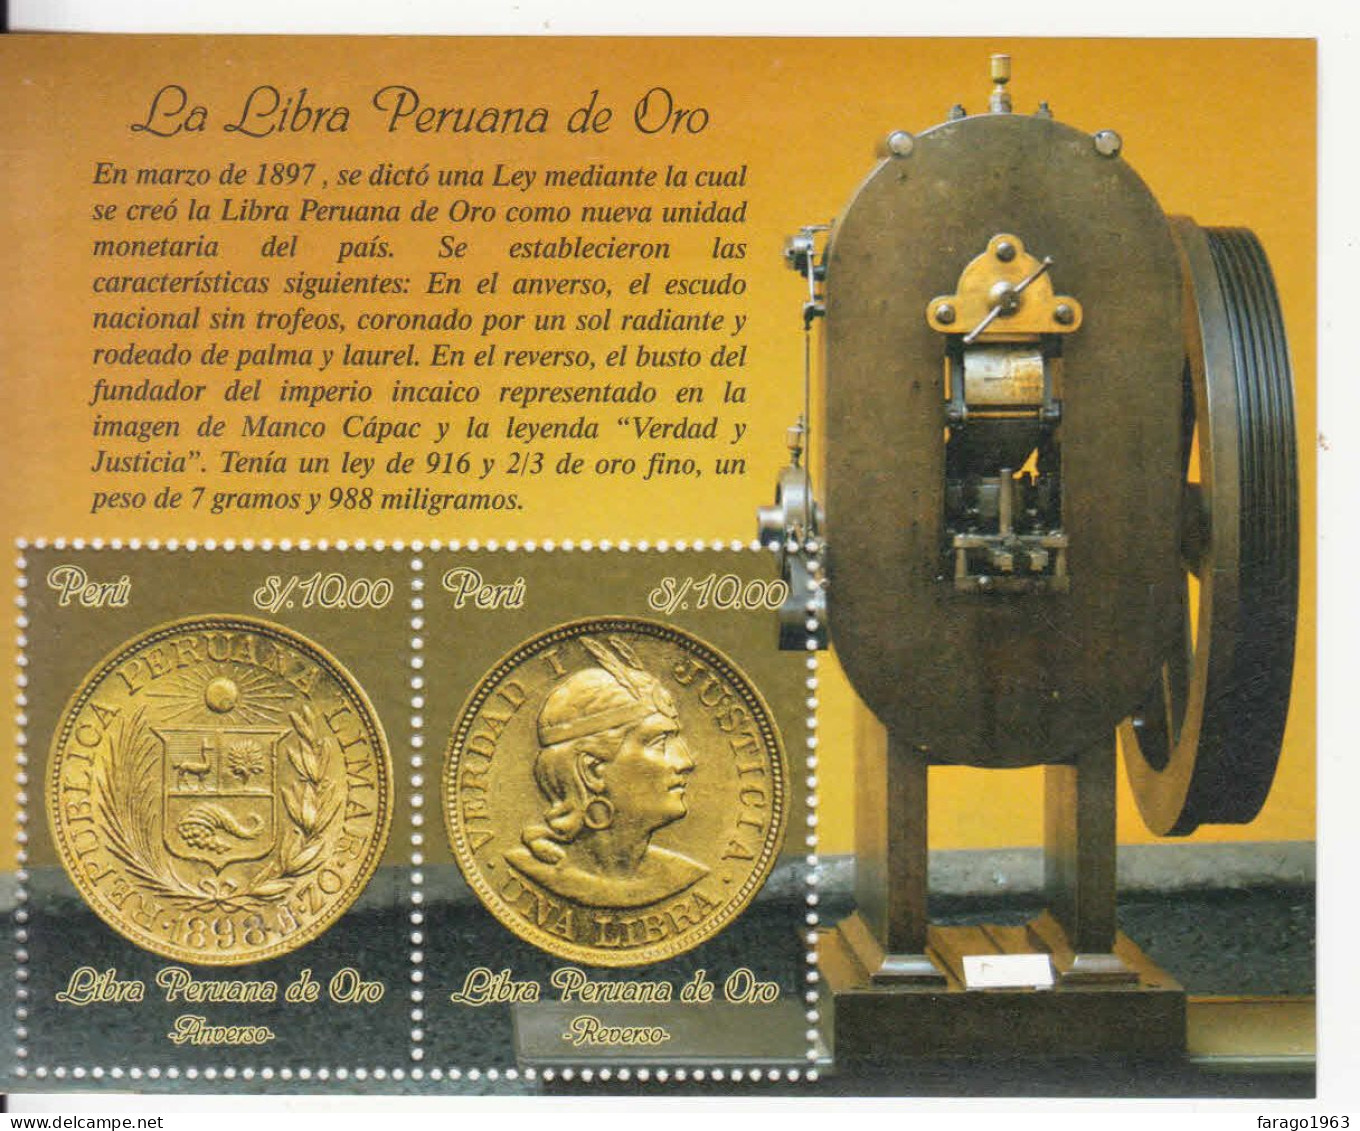 2014 Peru Gold Coin Money Monnaie Souvenir Sheet MNH - Peru